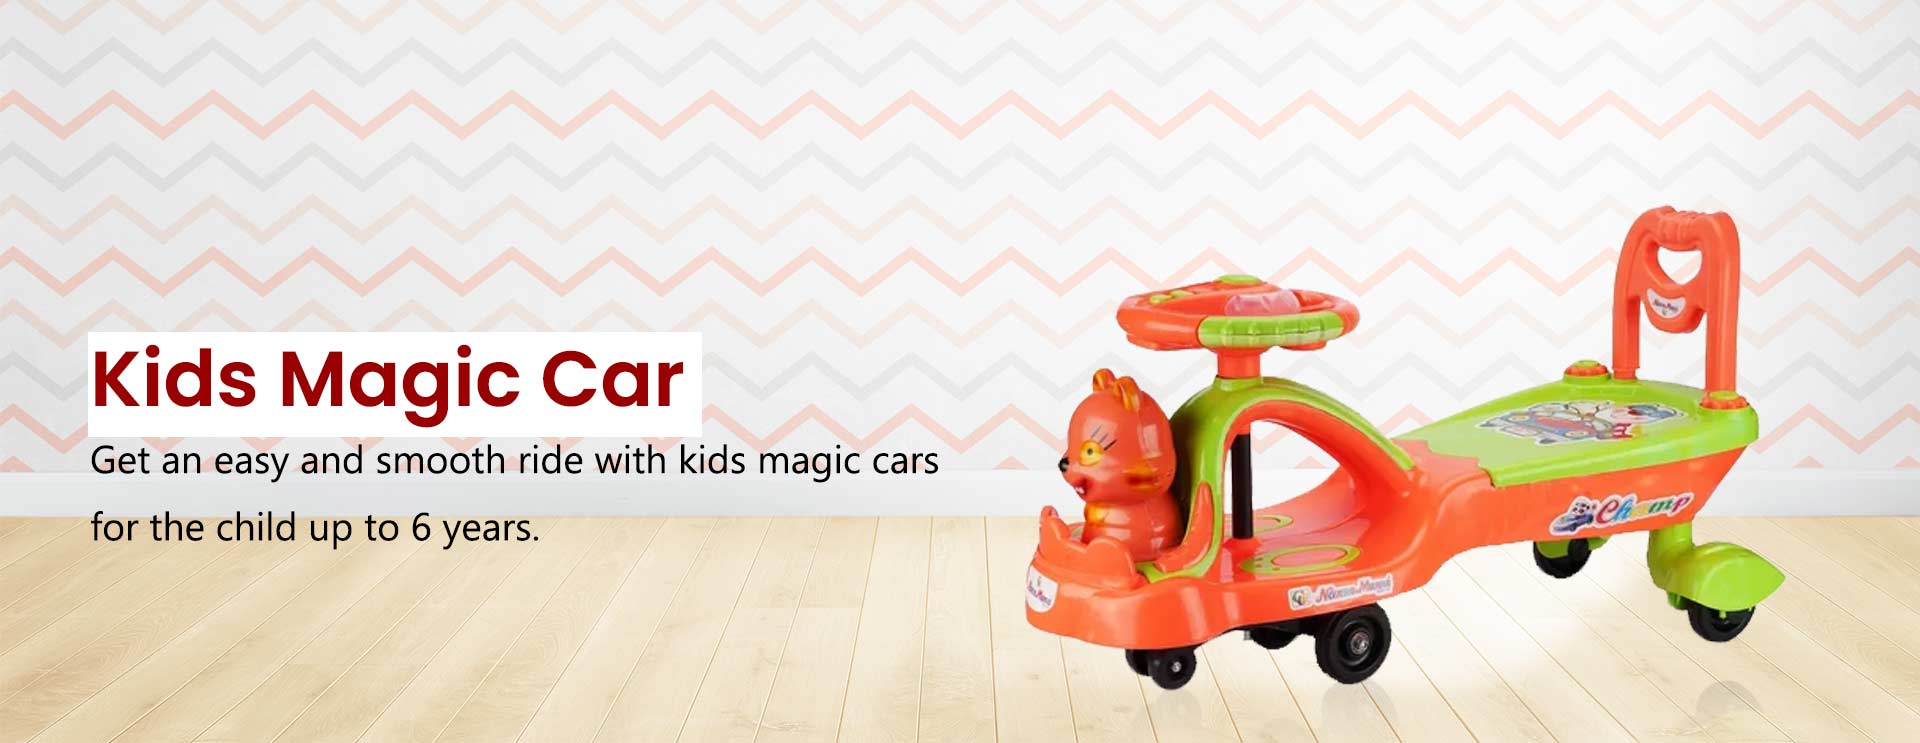 Kids Magic Car Manufacturers in Vellore